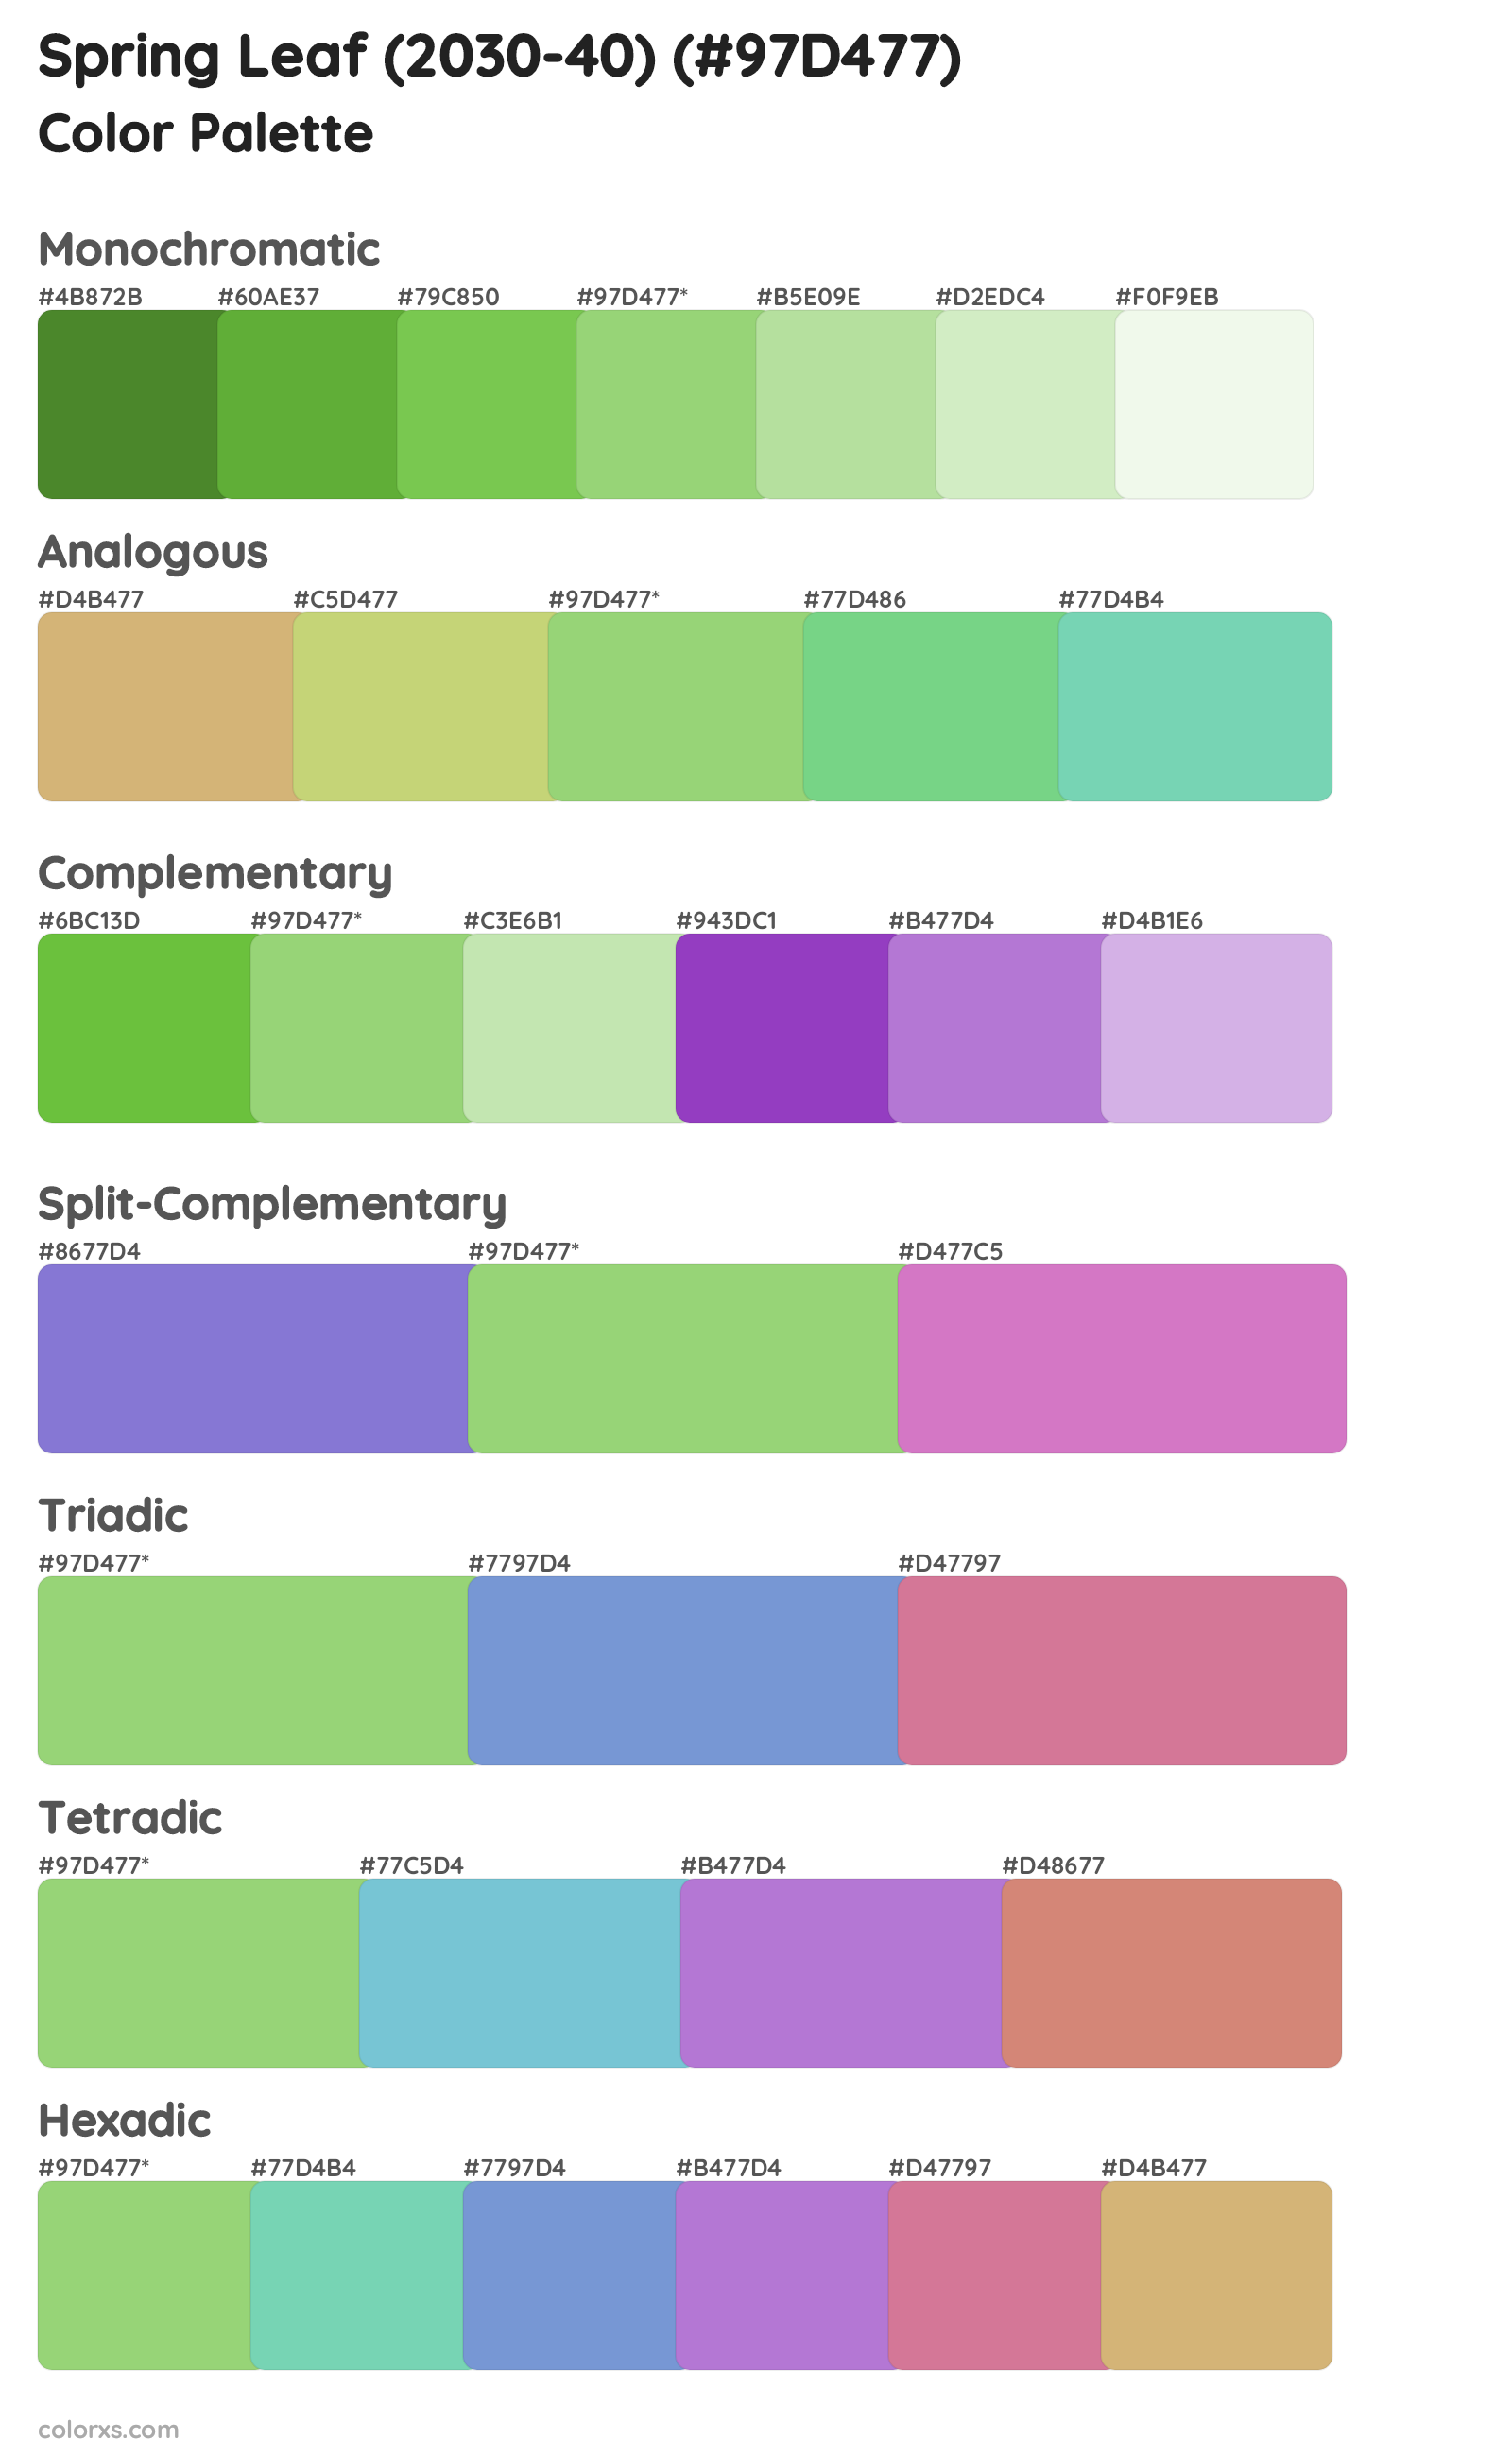 Spring Leaf (2030-40) Color Scheme Palettes